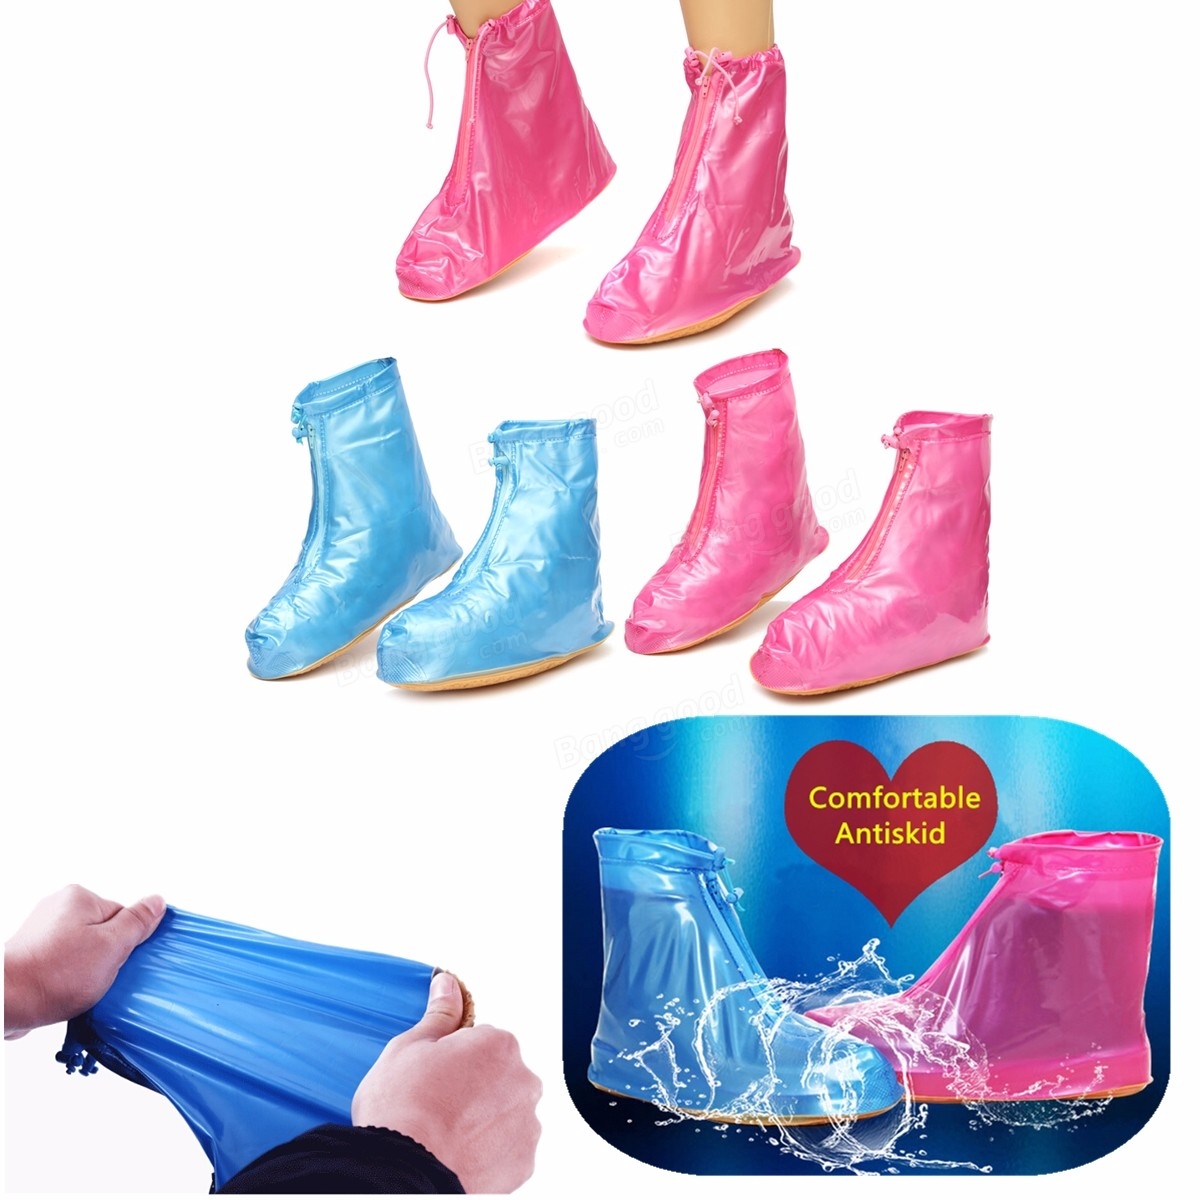 S M L XL Size Women Waterproof Shoe Covers Flattie Rain Rainproof Zip ...